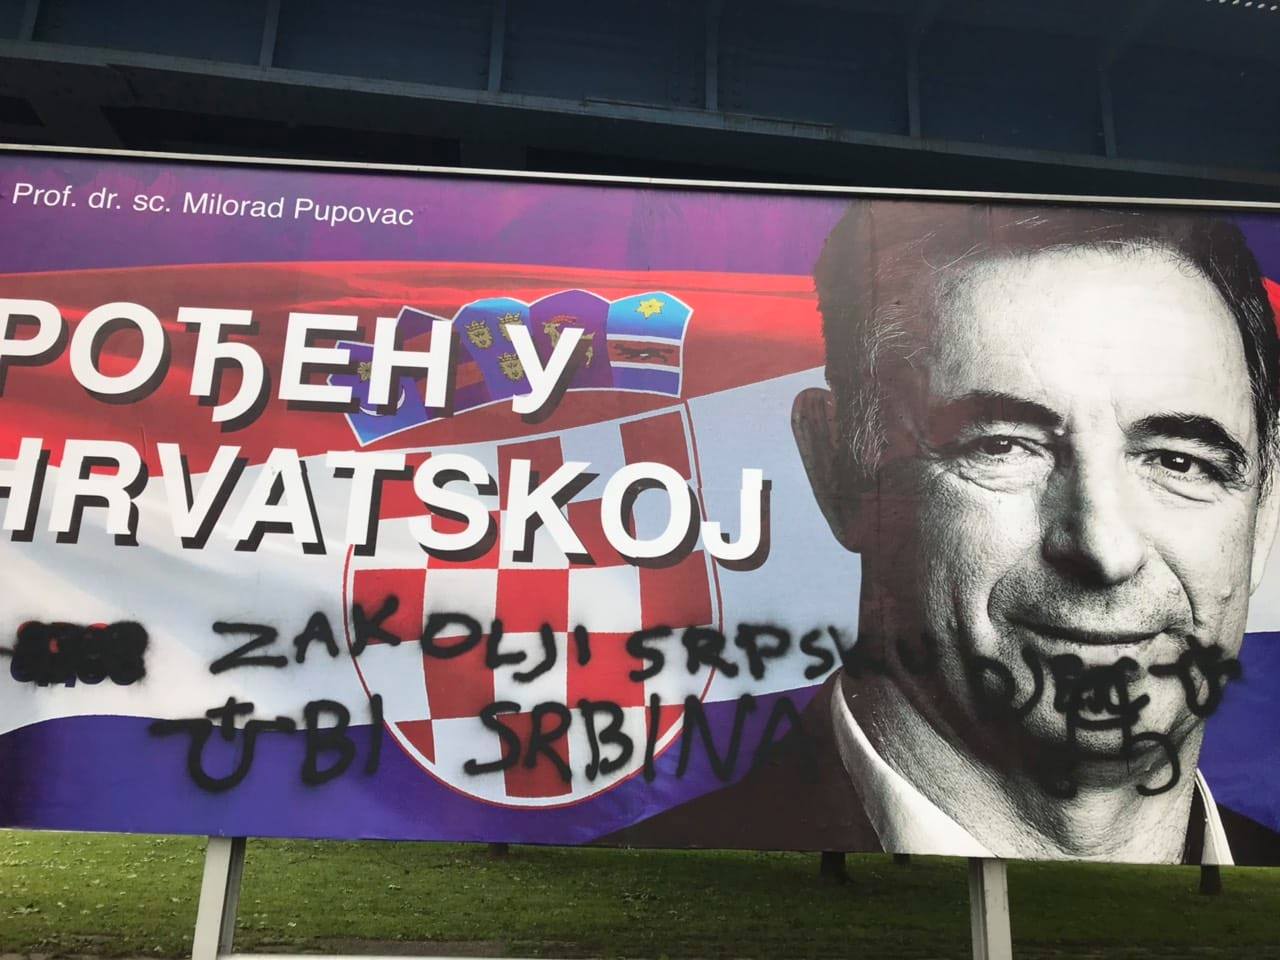 НОВИ ИЗЛИВИ УСТАШТВА У ХРВАТСКОЈ: ”Закољи српску децу” на билборду Милорада Пуповца